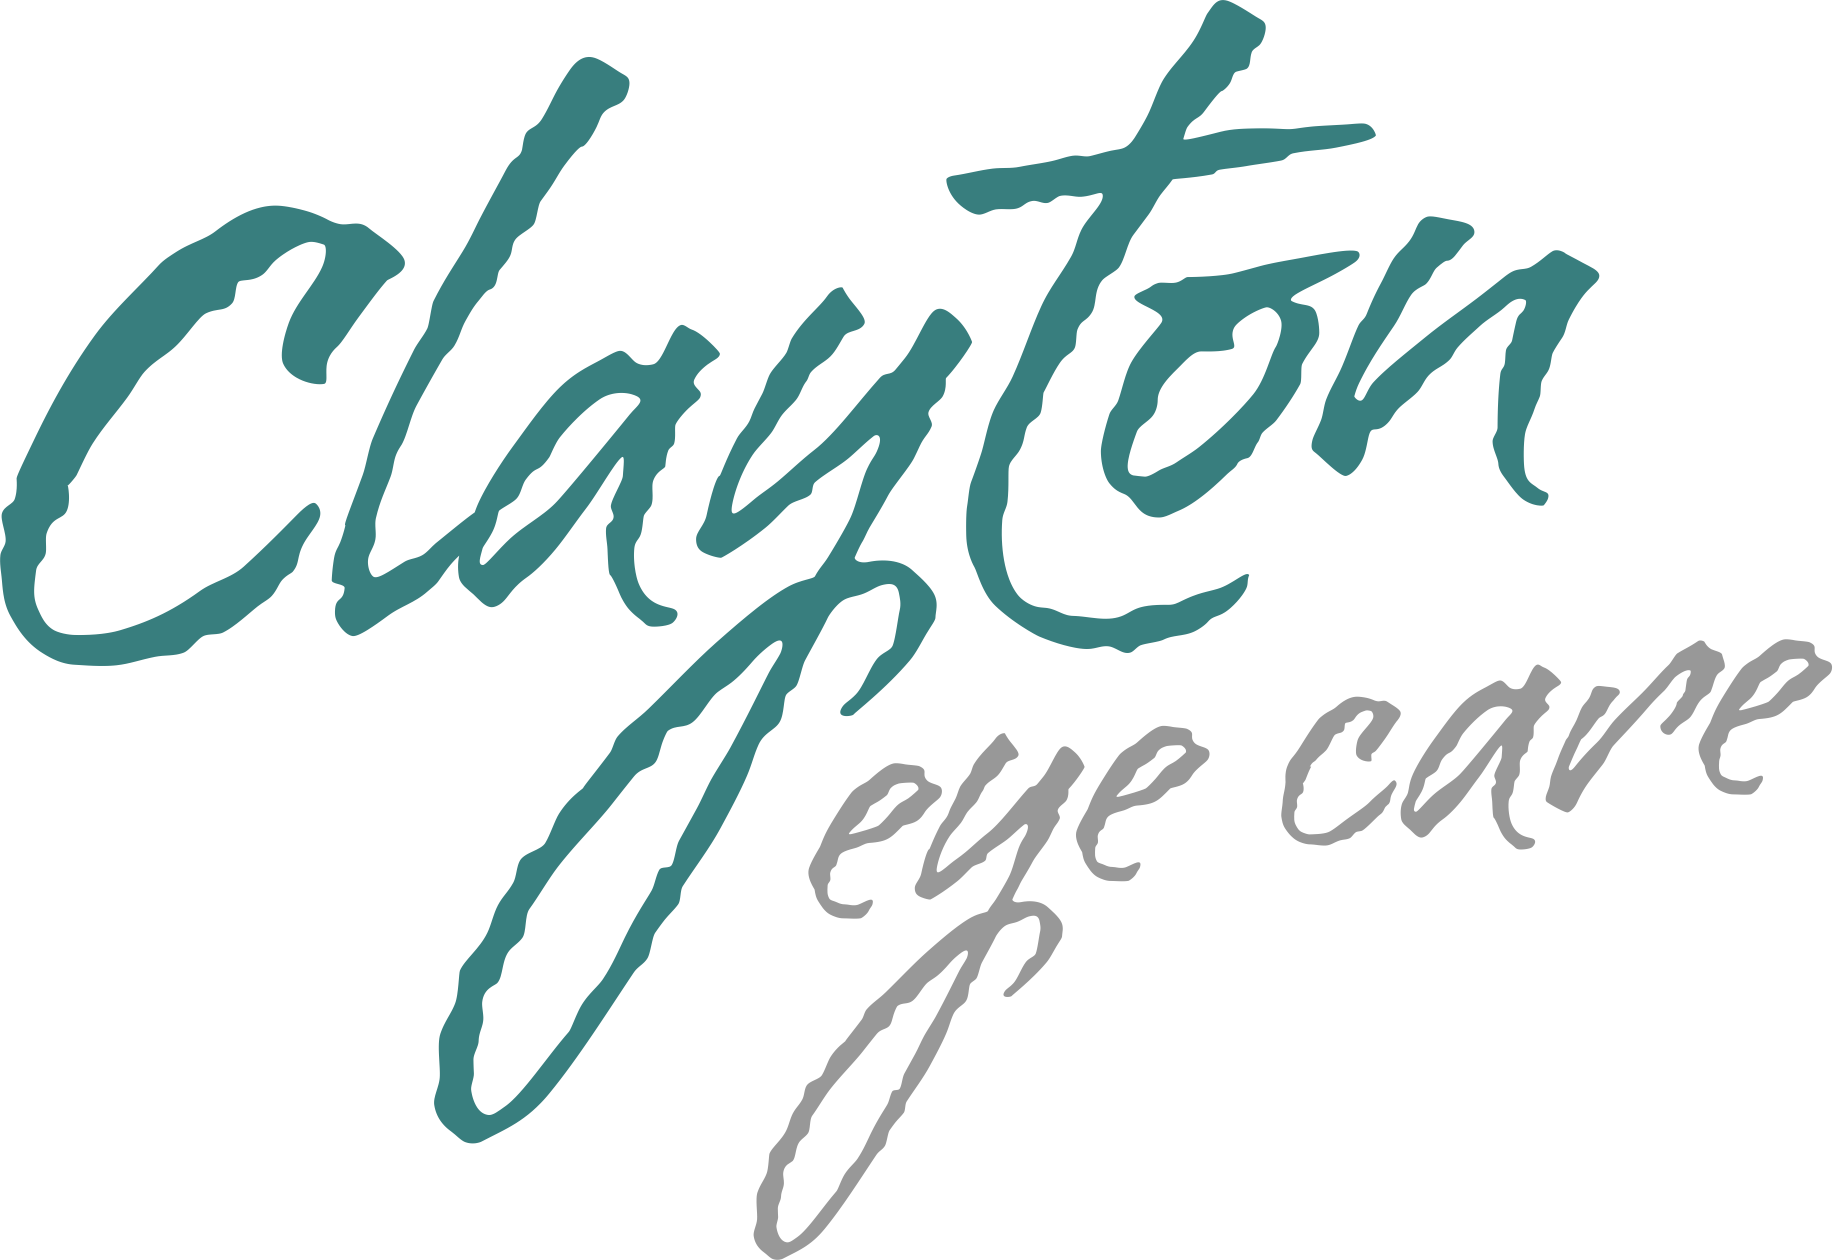 Clayton Eye Care